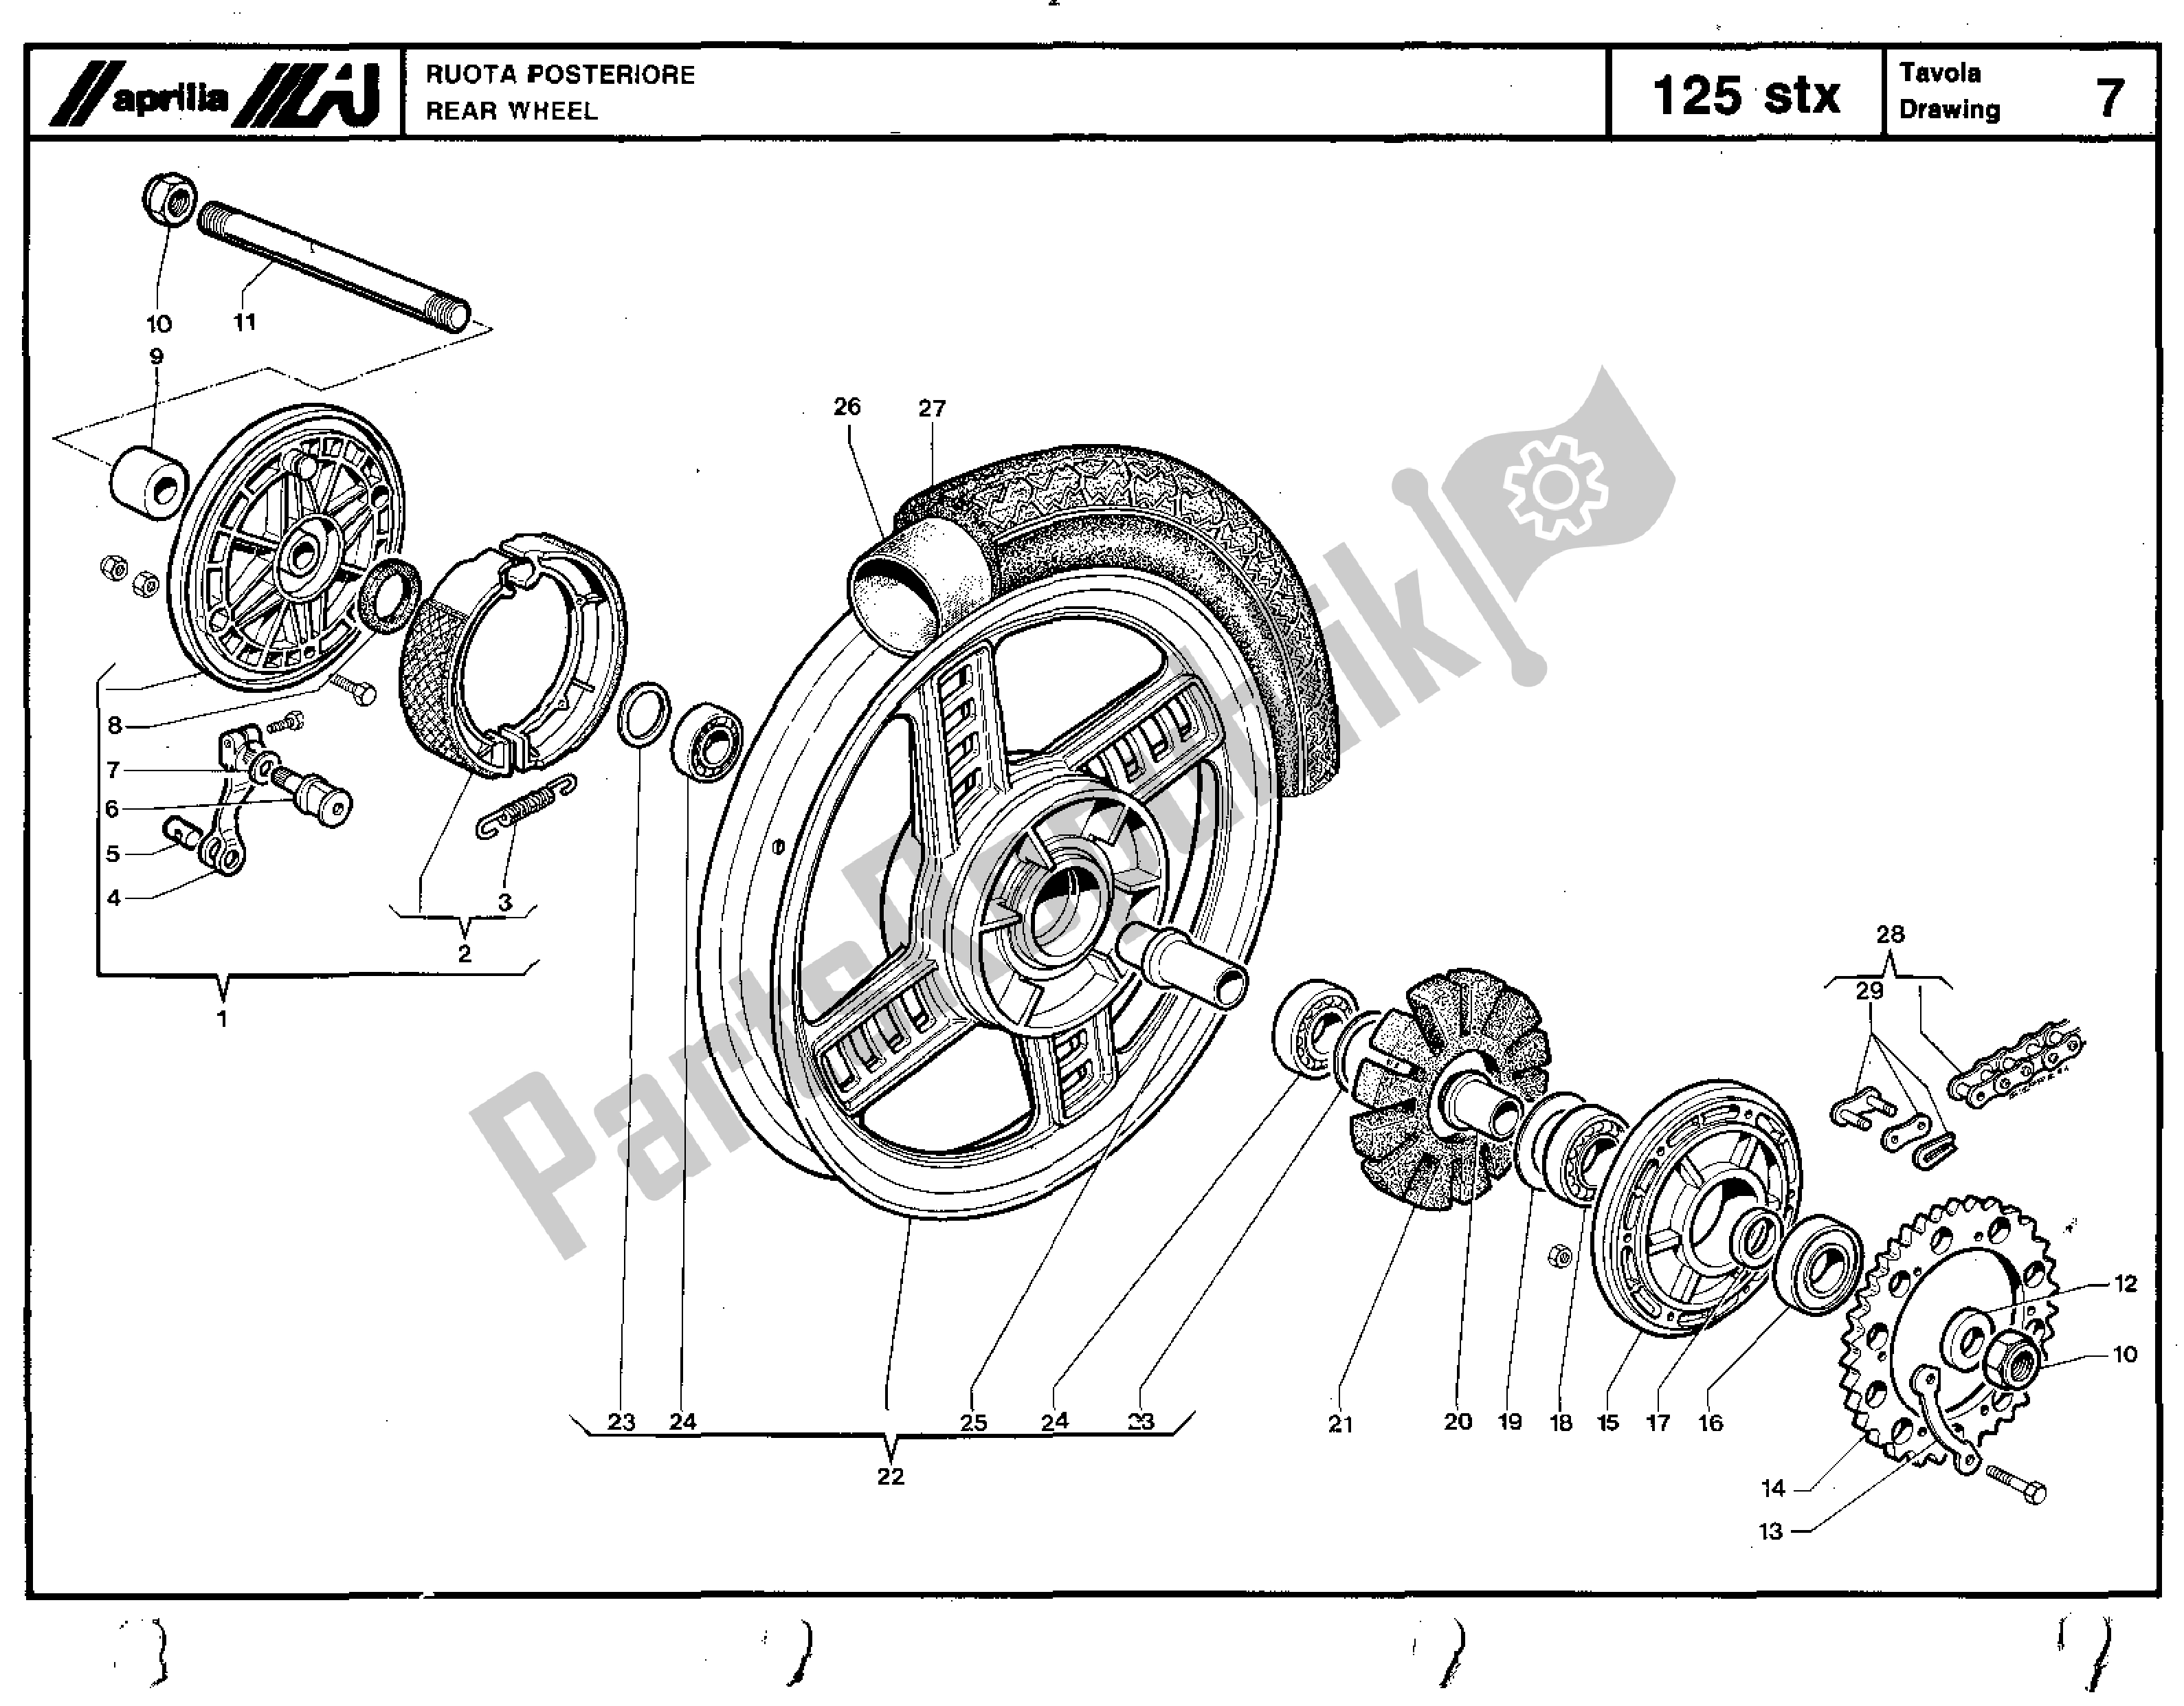 Toutes les pièces pour le Rear Wheel du Aprilia STX 125 1984 - 1986